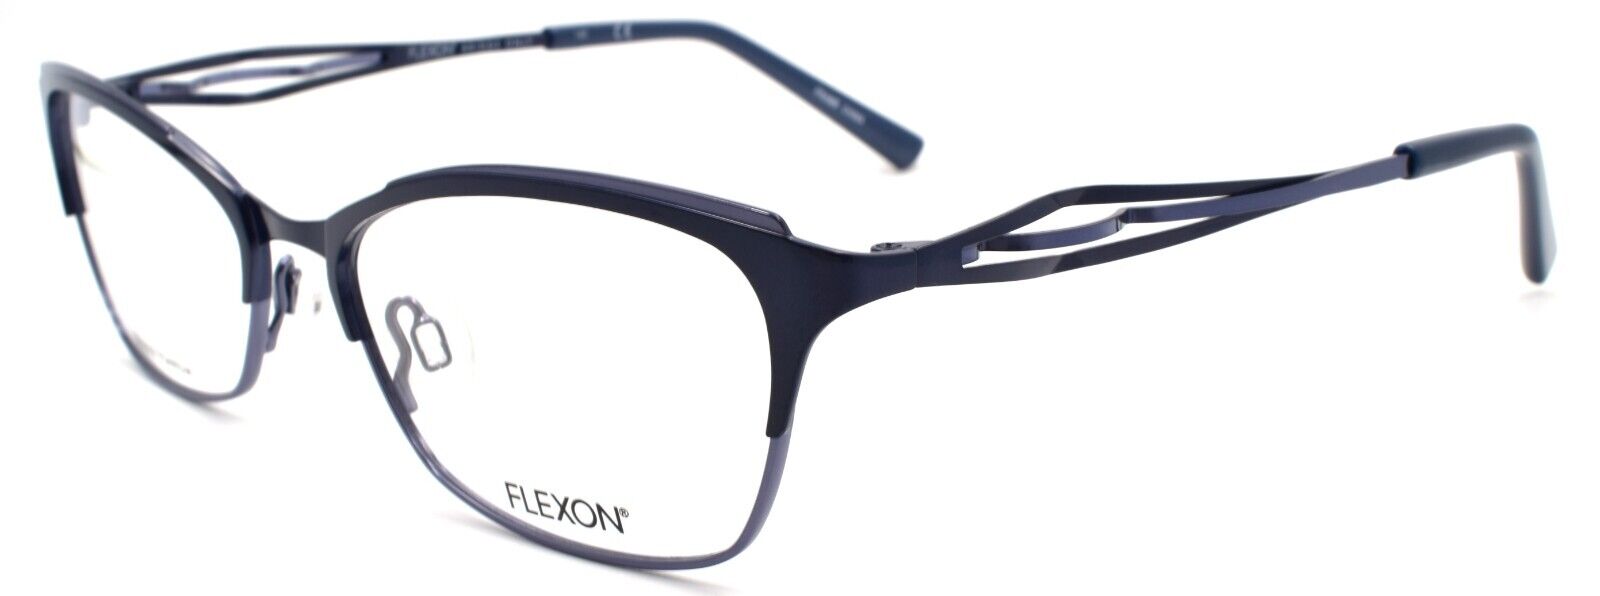 1-Flexon W3000 001 Women's Eyeglasses Frames Navy 53-17-135 Titanium Bridge-883900202879-IKSpecs